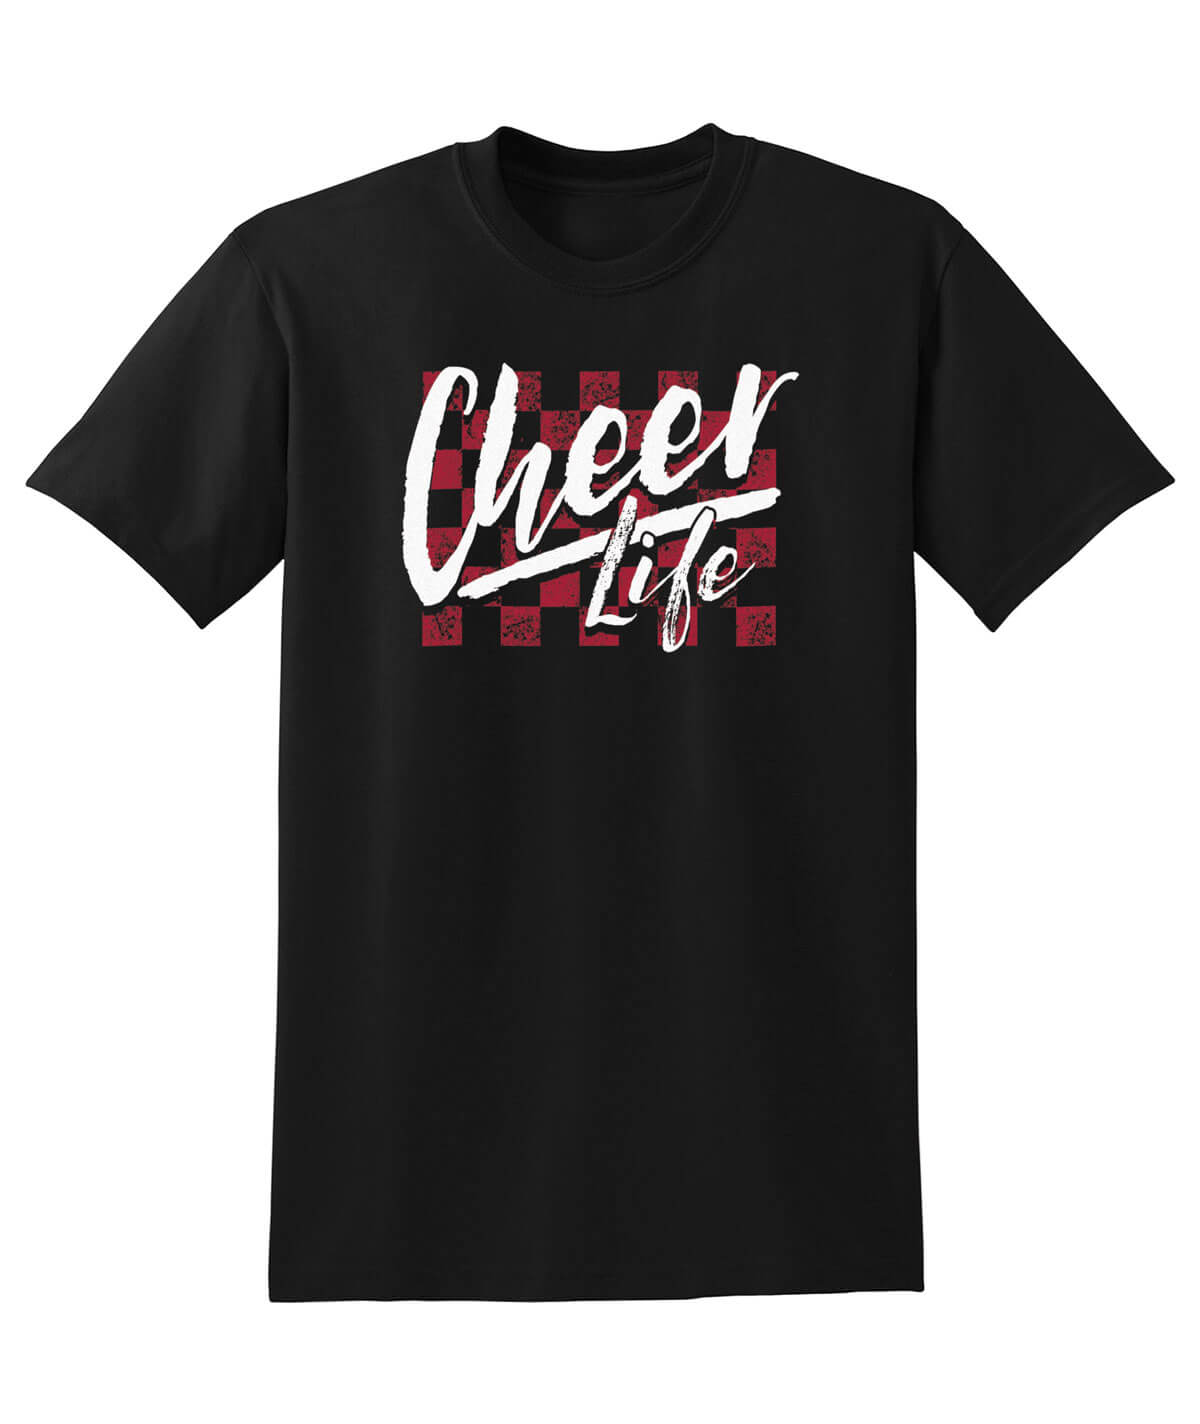 Cheer Life Tee